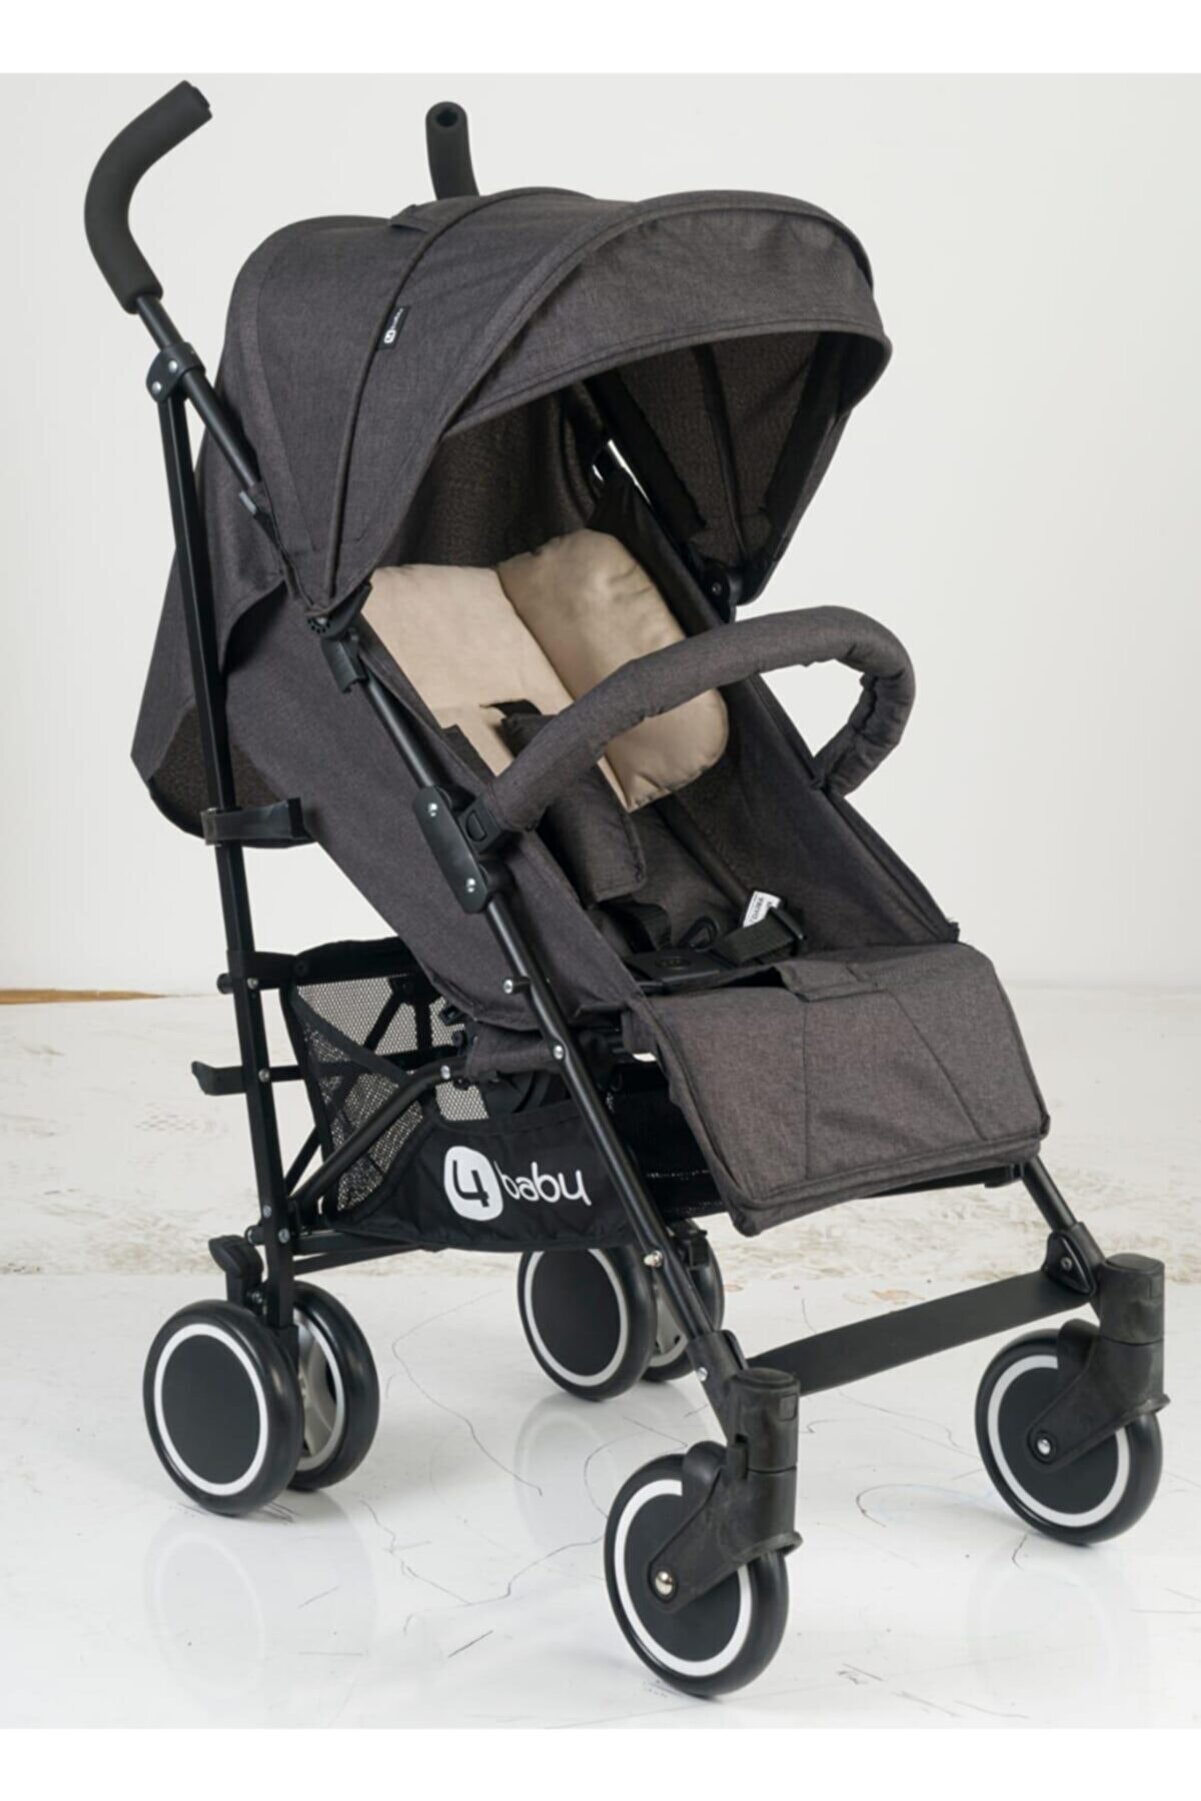 4 Baby Active Travel Sistem Bebek Arabası Ab-211